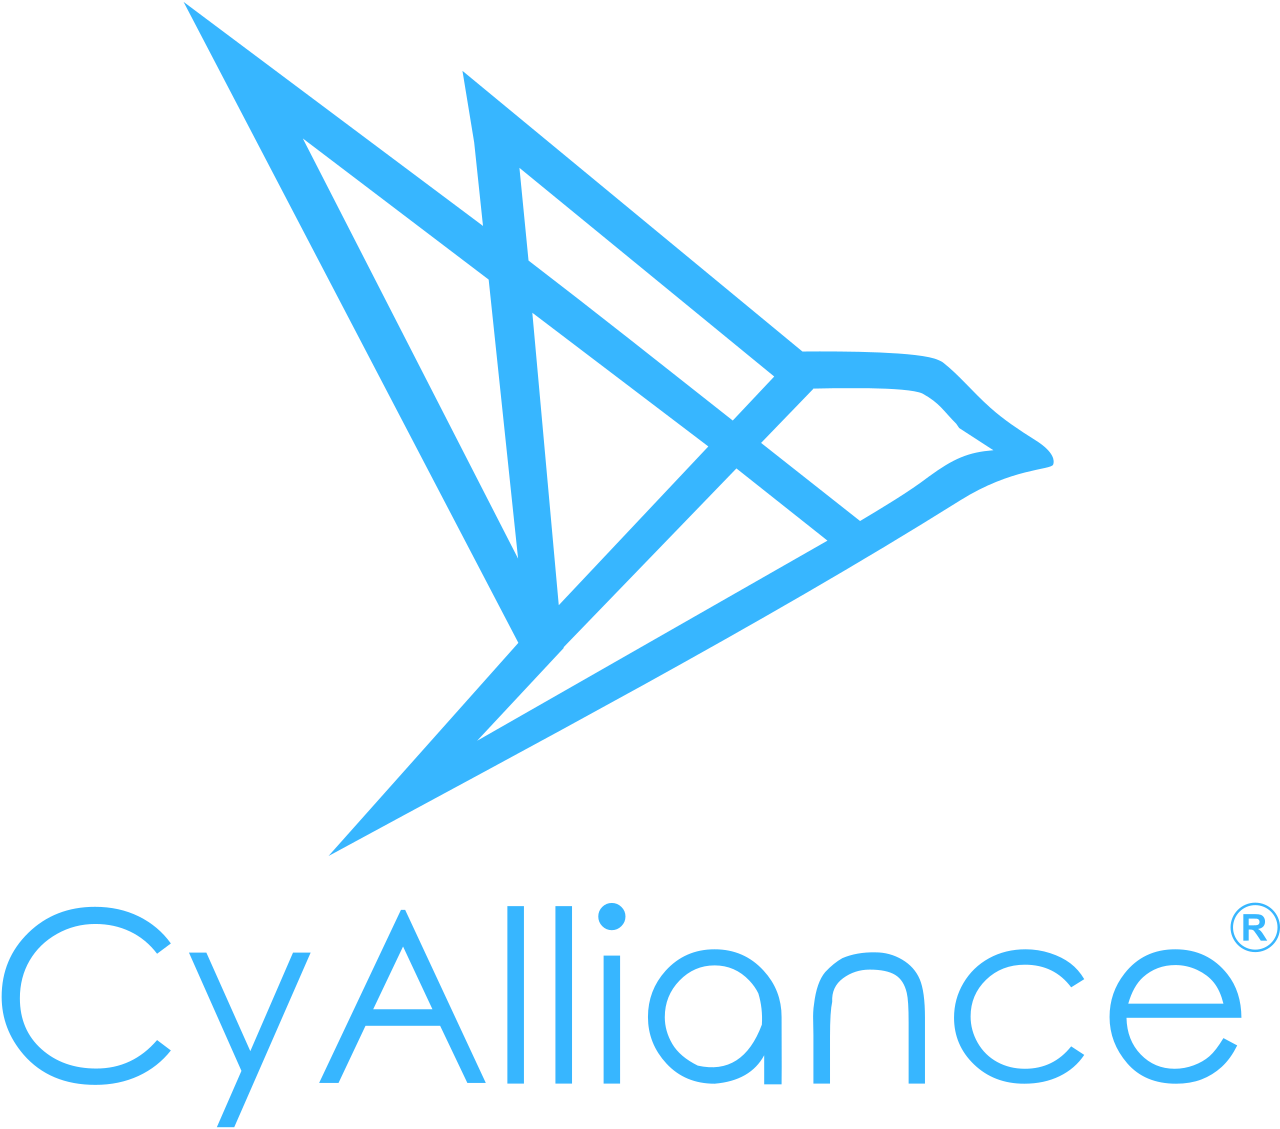 CyAlliance, LLC